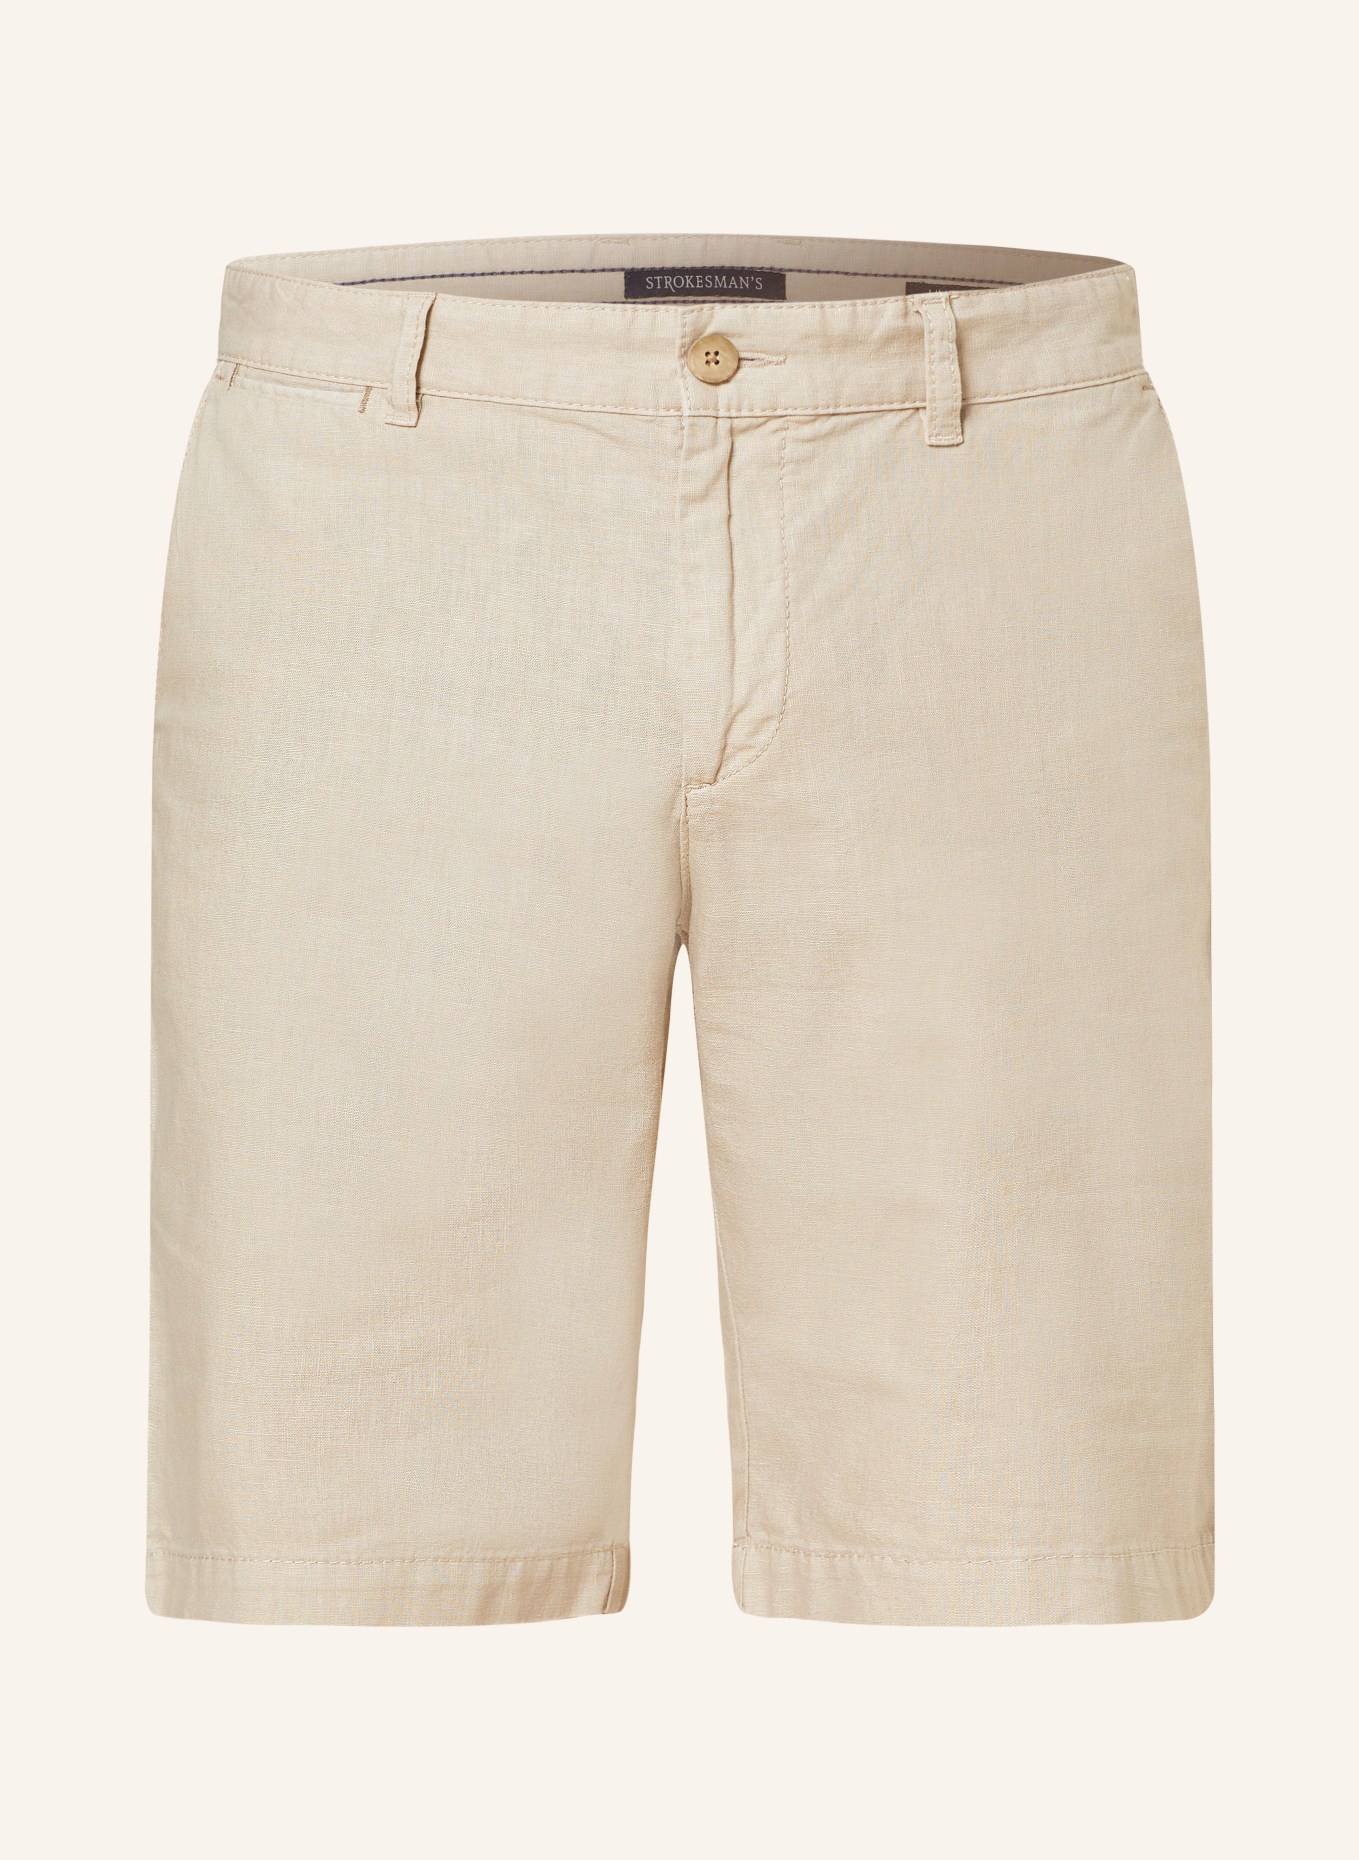 STROKESMAN'S Shorts Slim Fit mit Leinen, Farbe: 0202 sand (Bild 1)